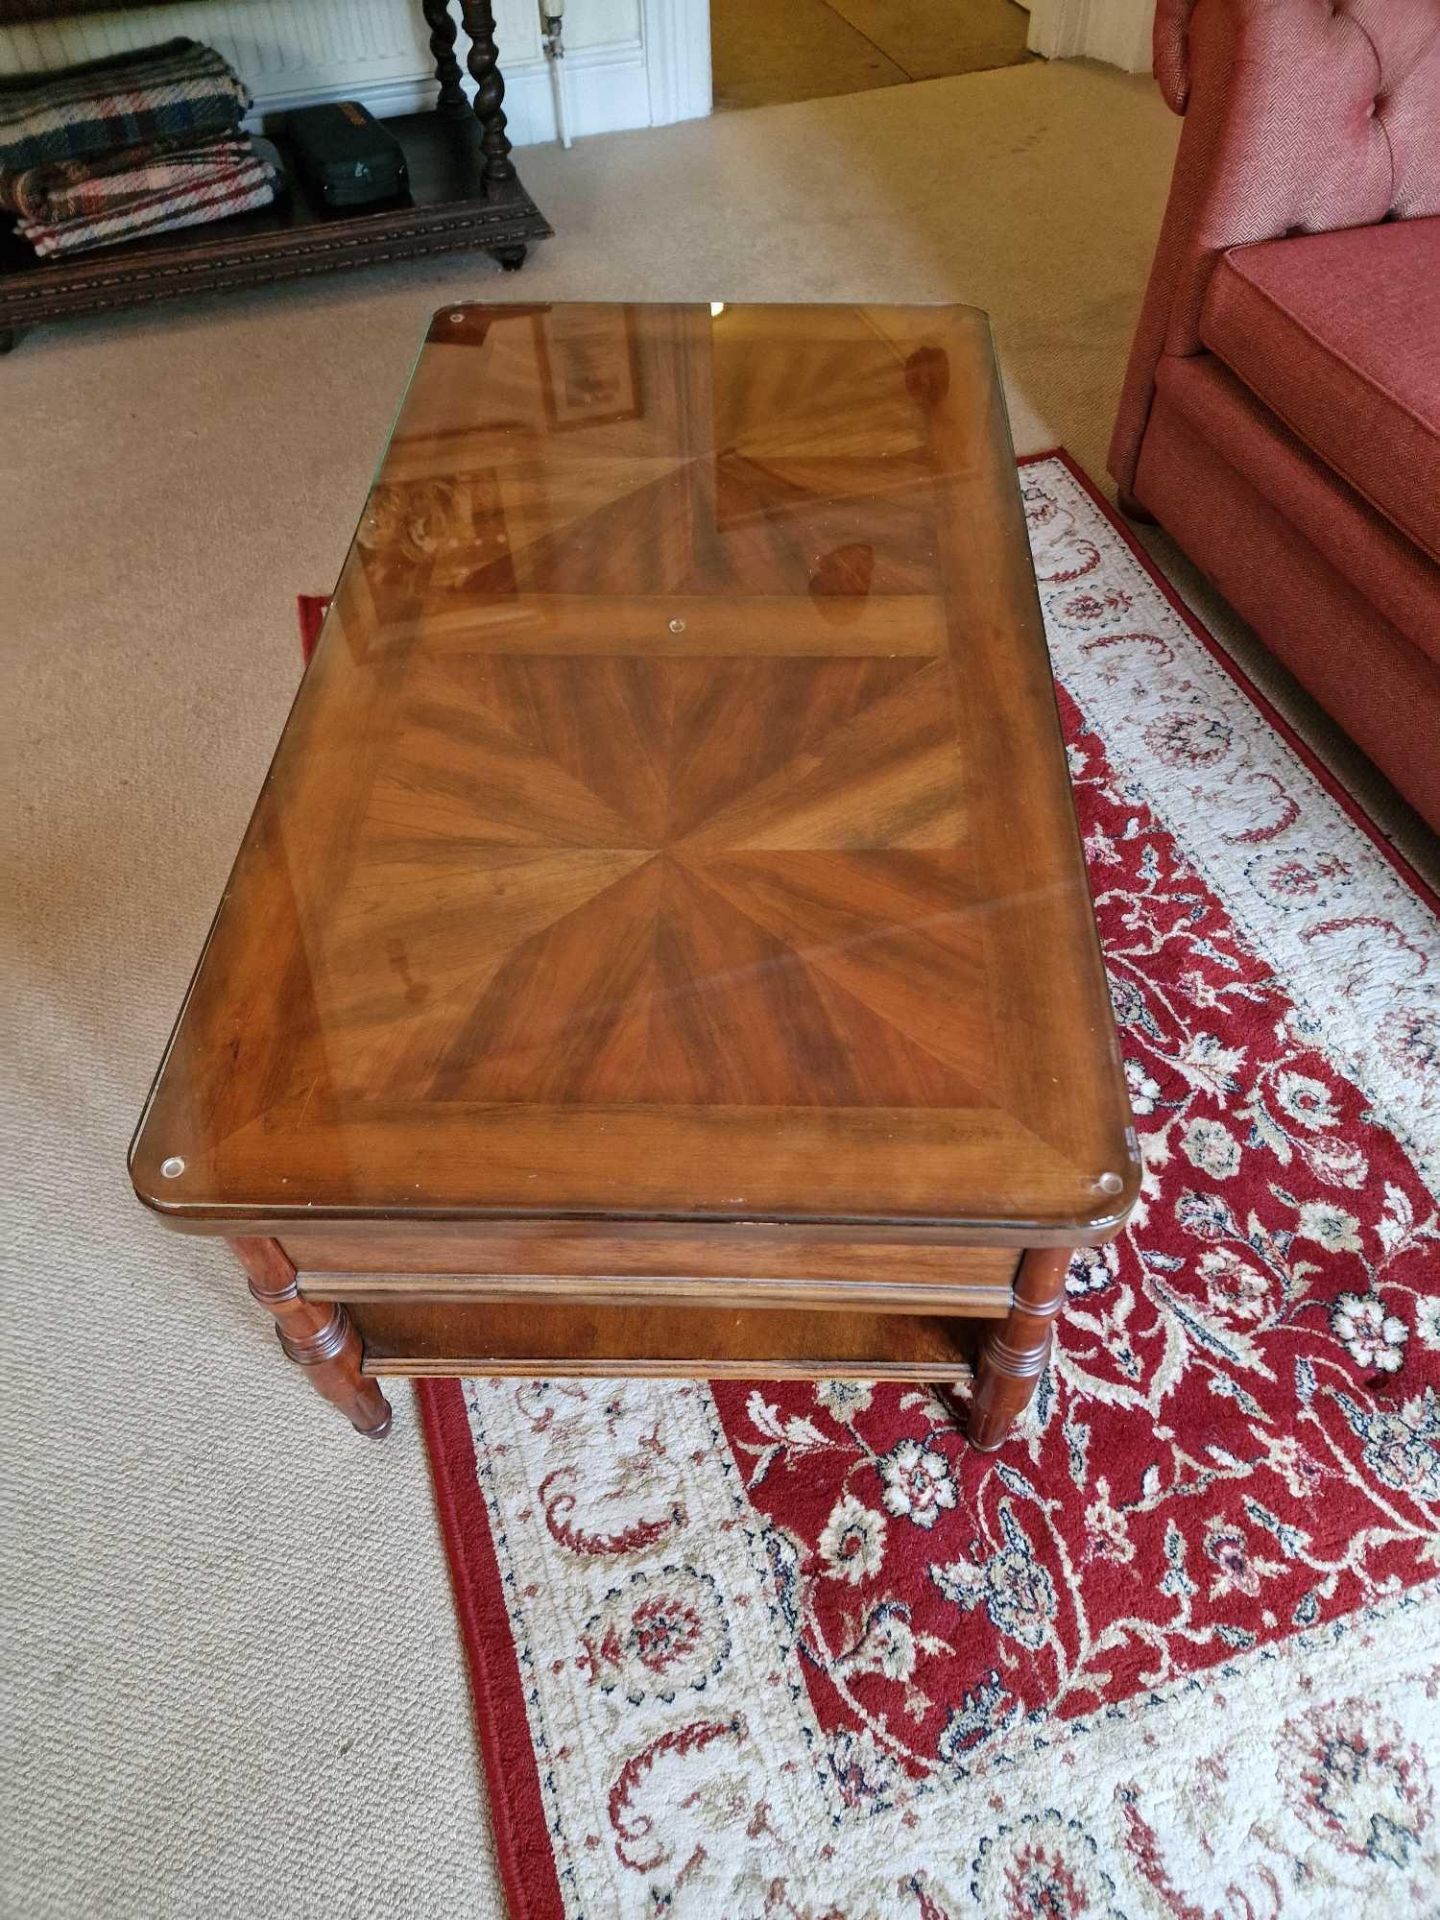 A Regency Style Cherry Wood Two Drawer Coffee Table With Undershelf 110 x 60 x 46cm - Bild 2 aus 3